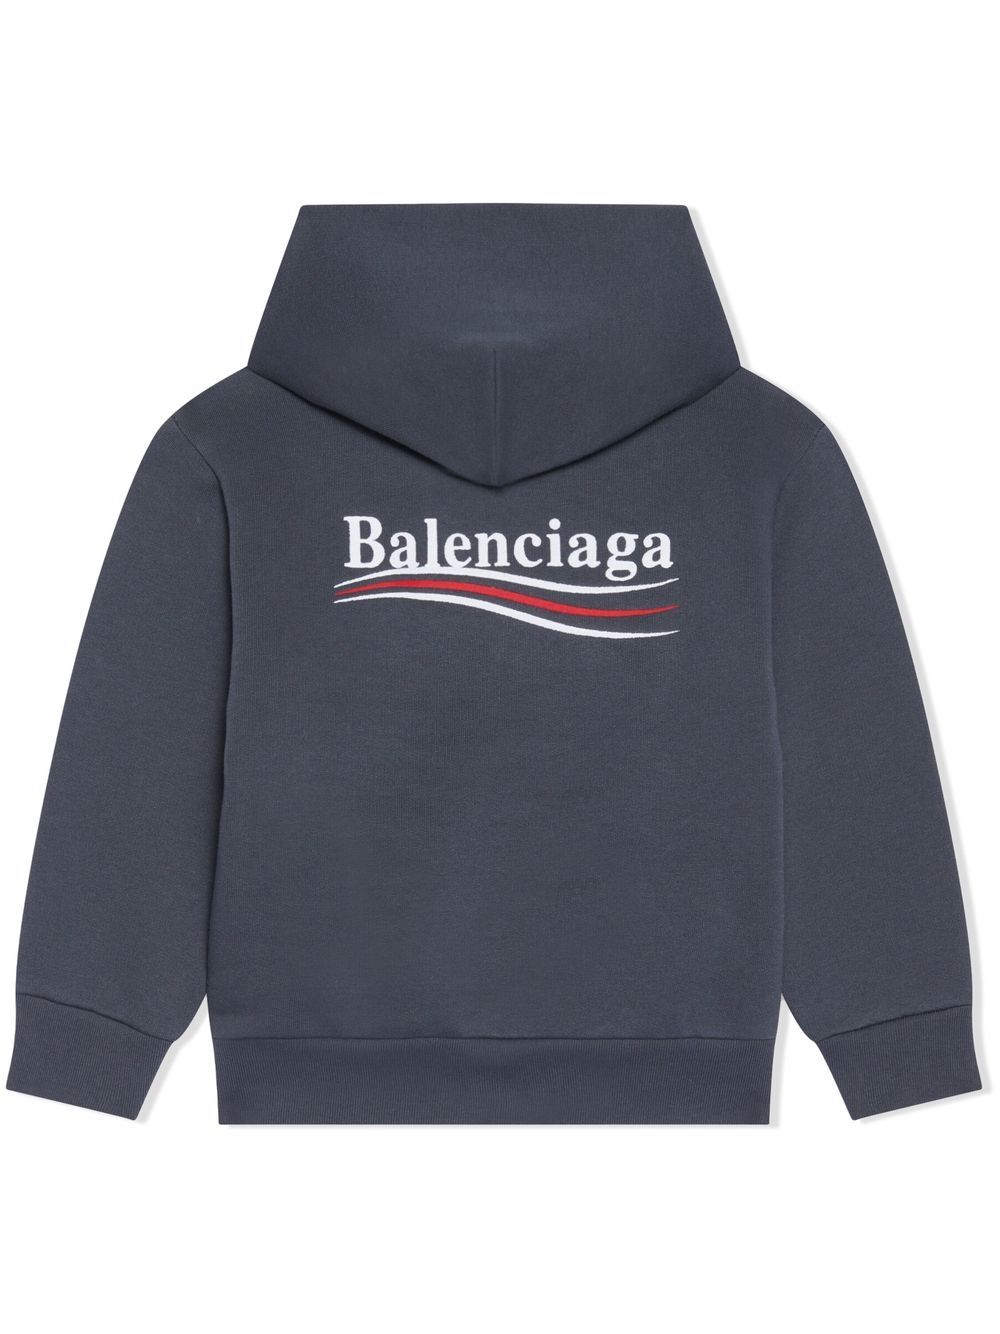 BALENCIAGA KIDS Political Campaign Logo Hoodie Grey - MAISONDEFASHION.COM